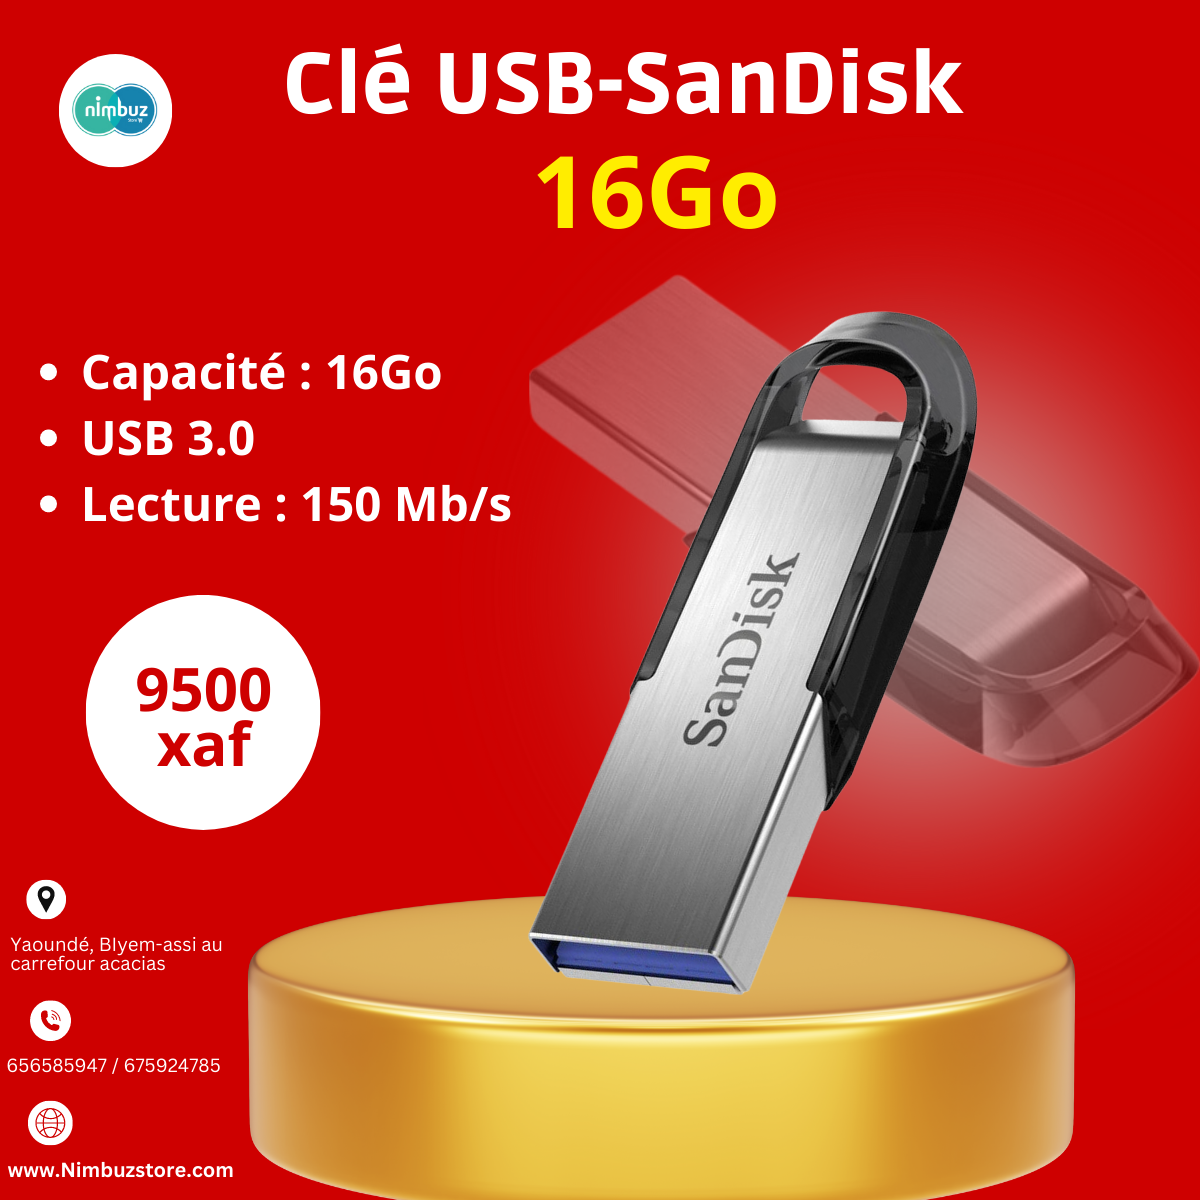 Clé USB 2.0 Cruzer Blade 128 Go SANDISK à Prix Carrefour